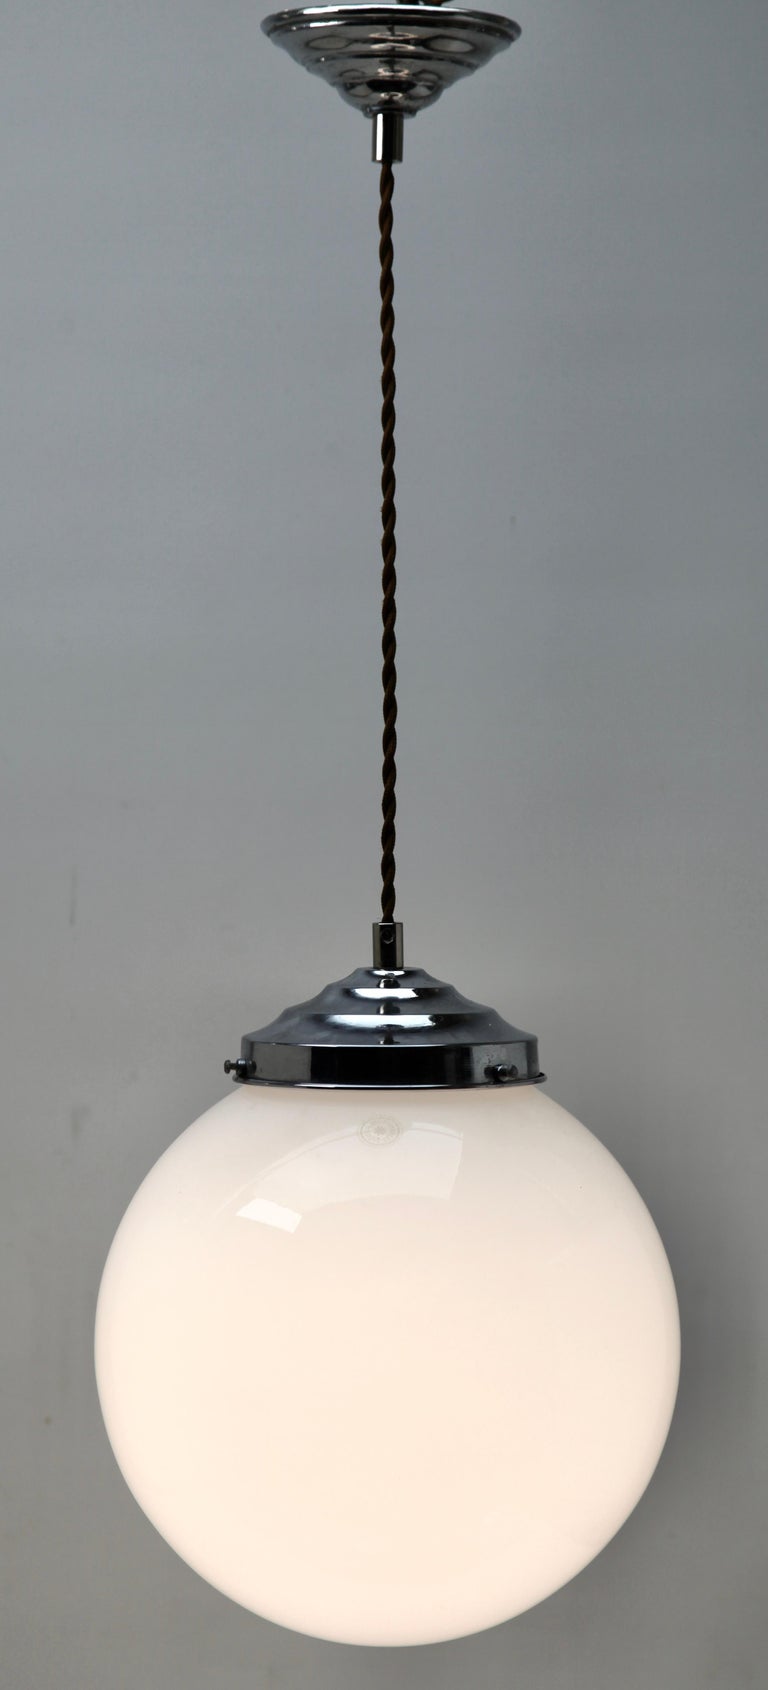 Belgian Art Deco Pair of Ceiling Lamps, Val Saint-Lambert Belgium Glass Shade, 1930s For Sale